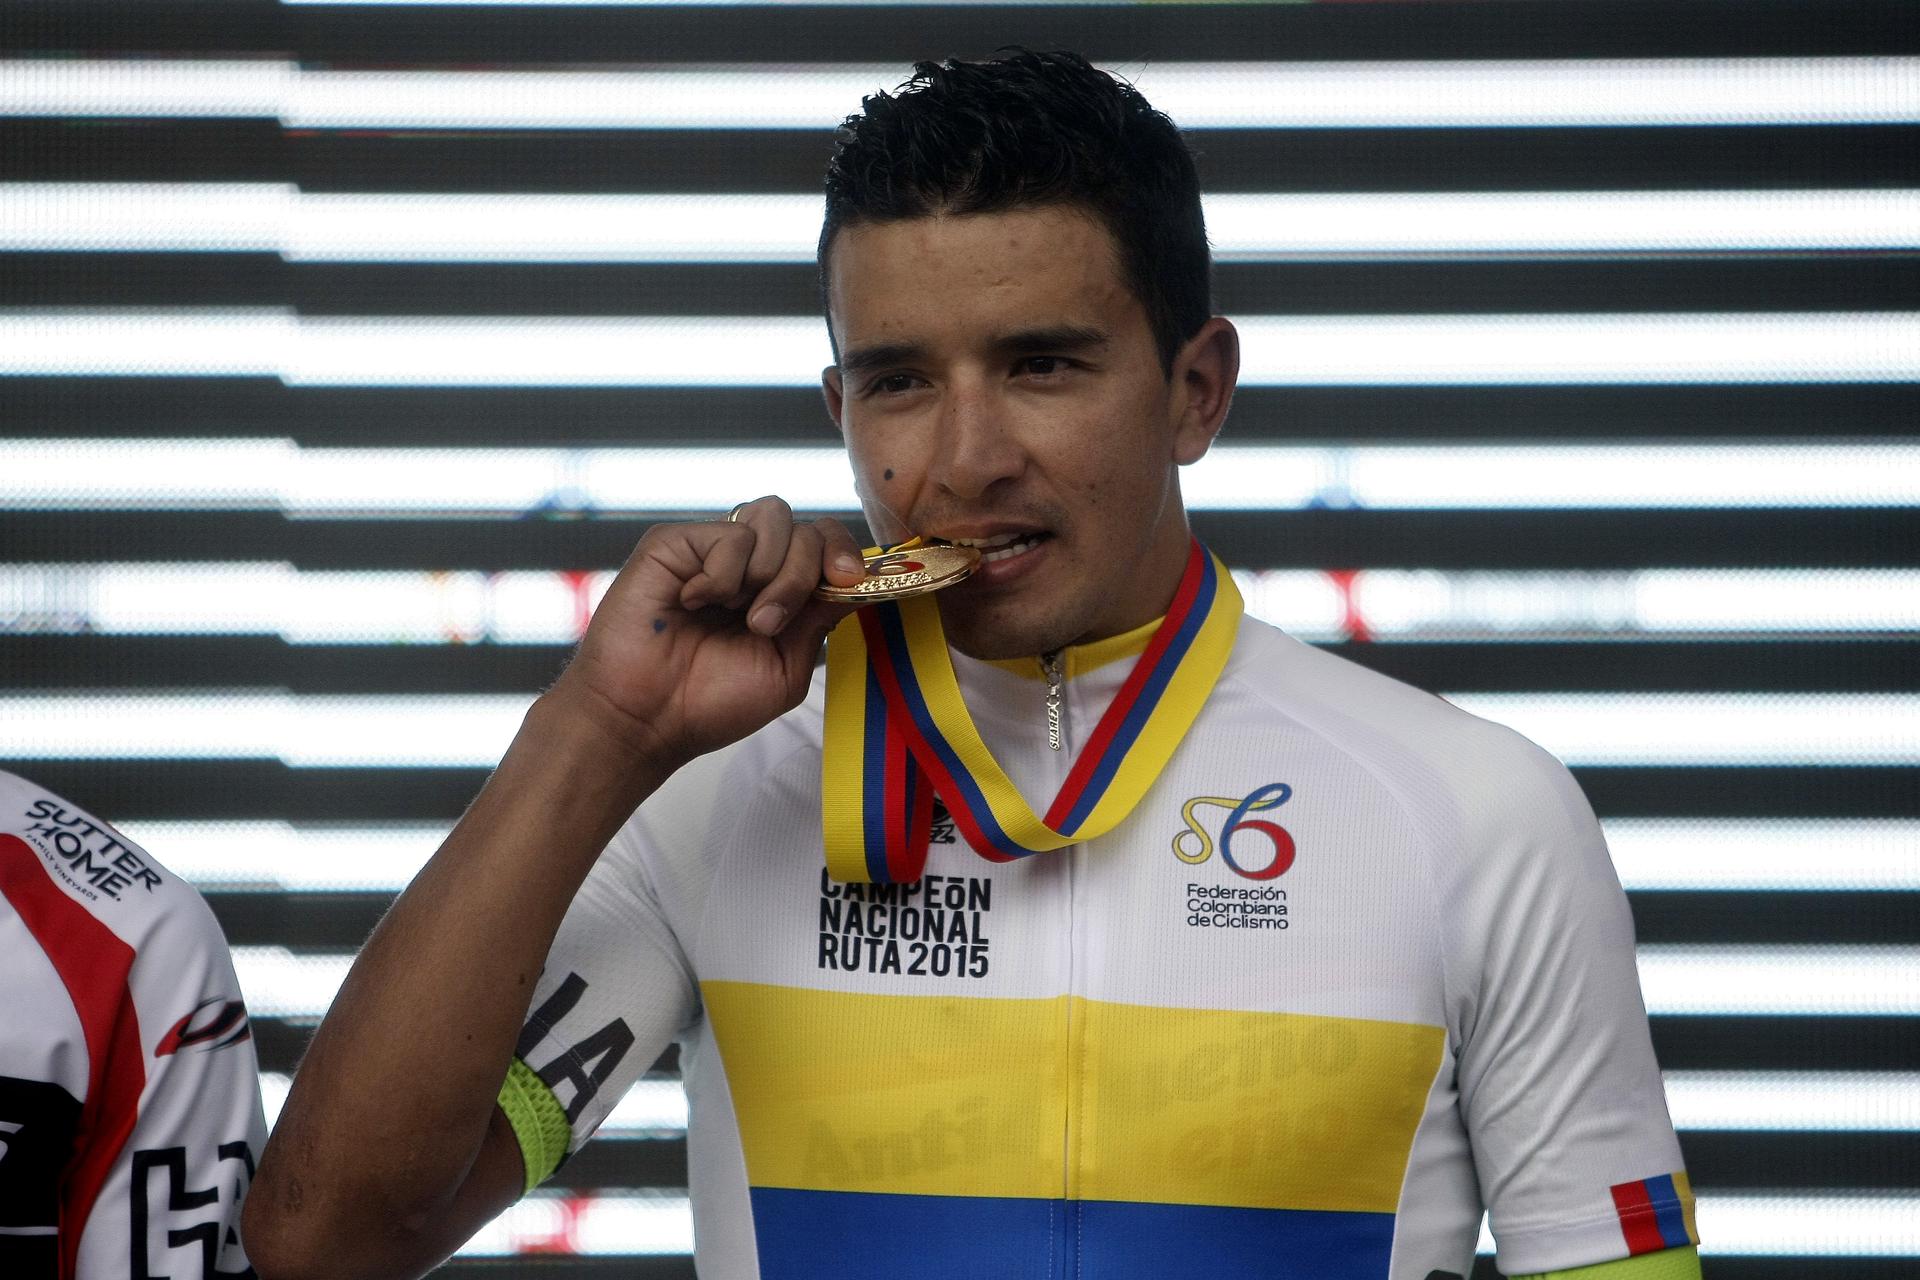 El ciclista colombiano Robinson Chalapud, en una fotografía de archivo. EFE/Luis Eduardo Noriega